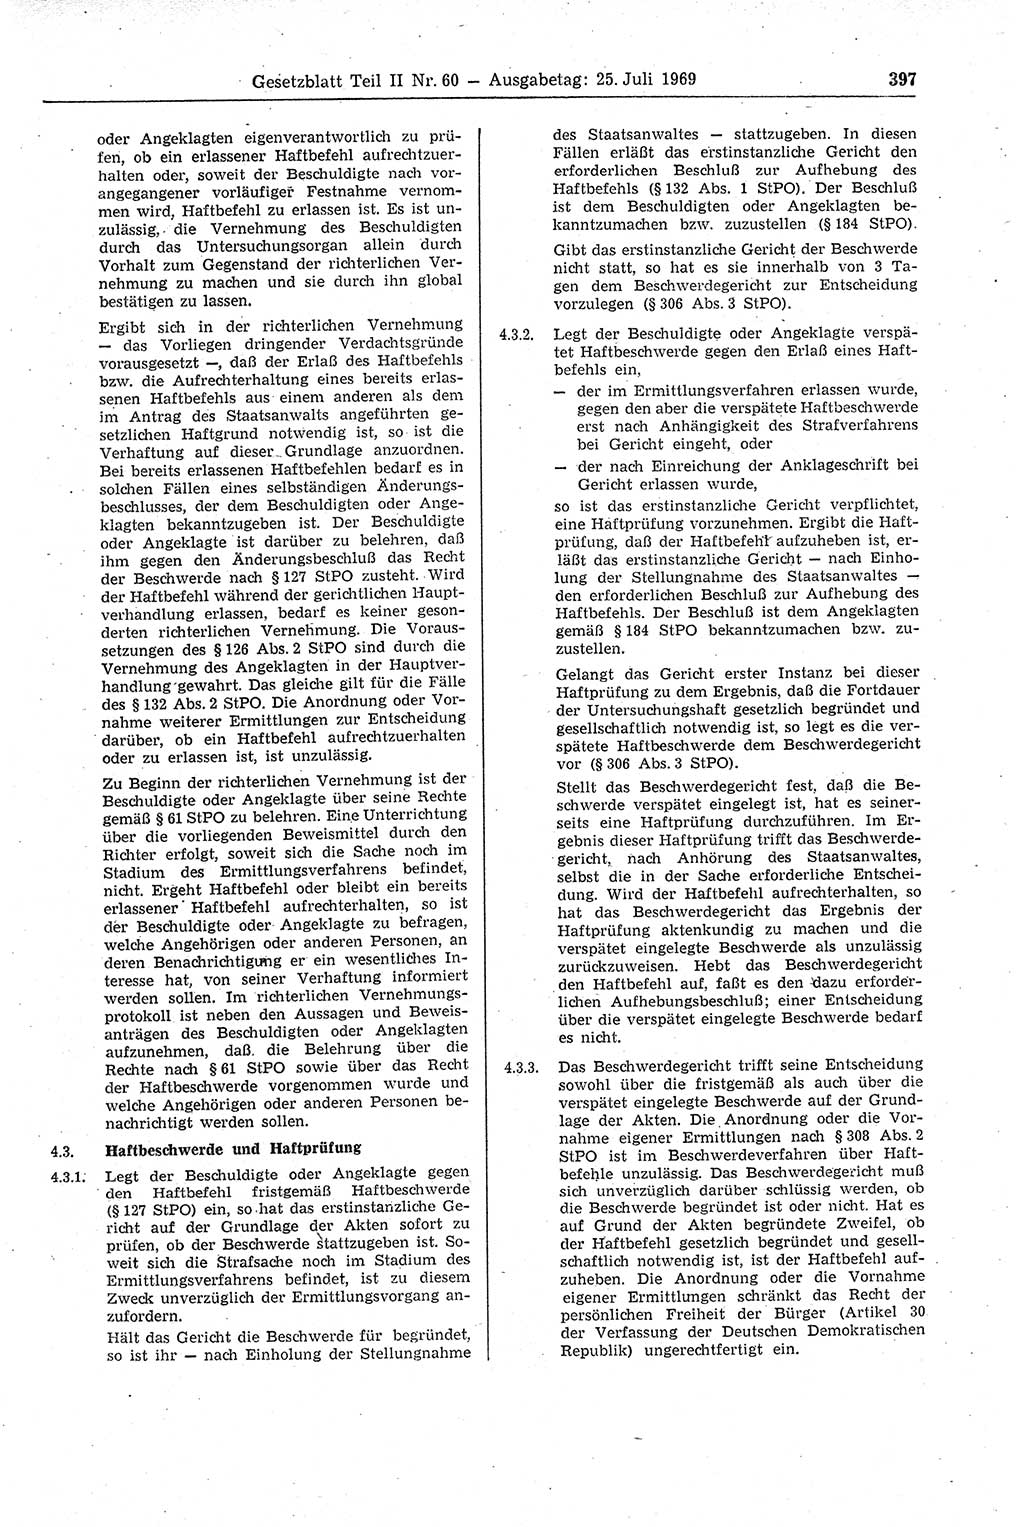 Gesetzblatt (GBl.) der Deutschen Demokratischen Republik (DDR) Teil ⅠⅠ 1969, Seite 397 (GBl. DDR ⅠⅠ 1969, S. 397)